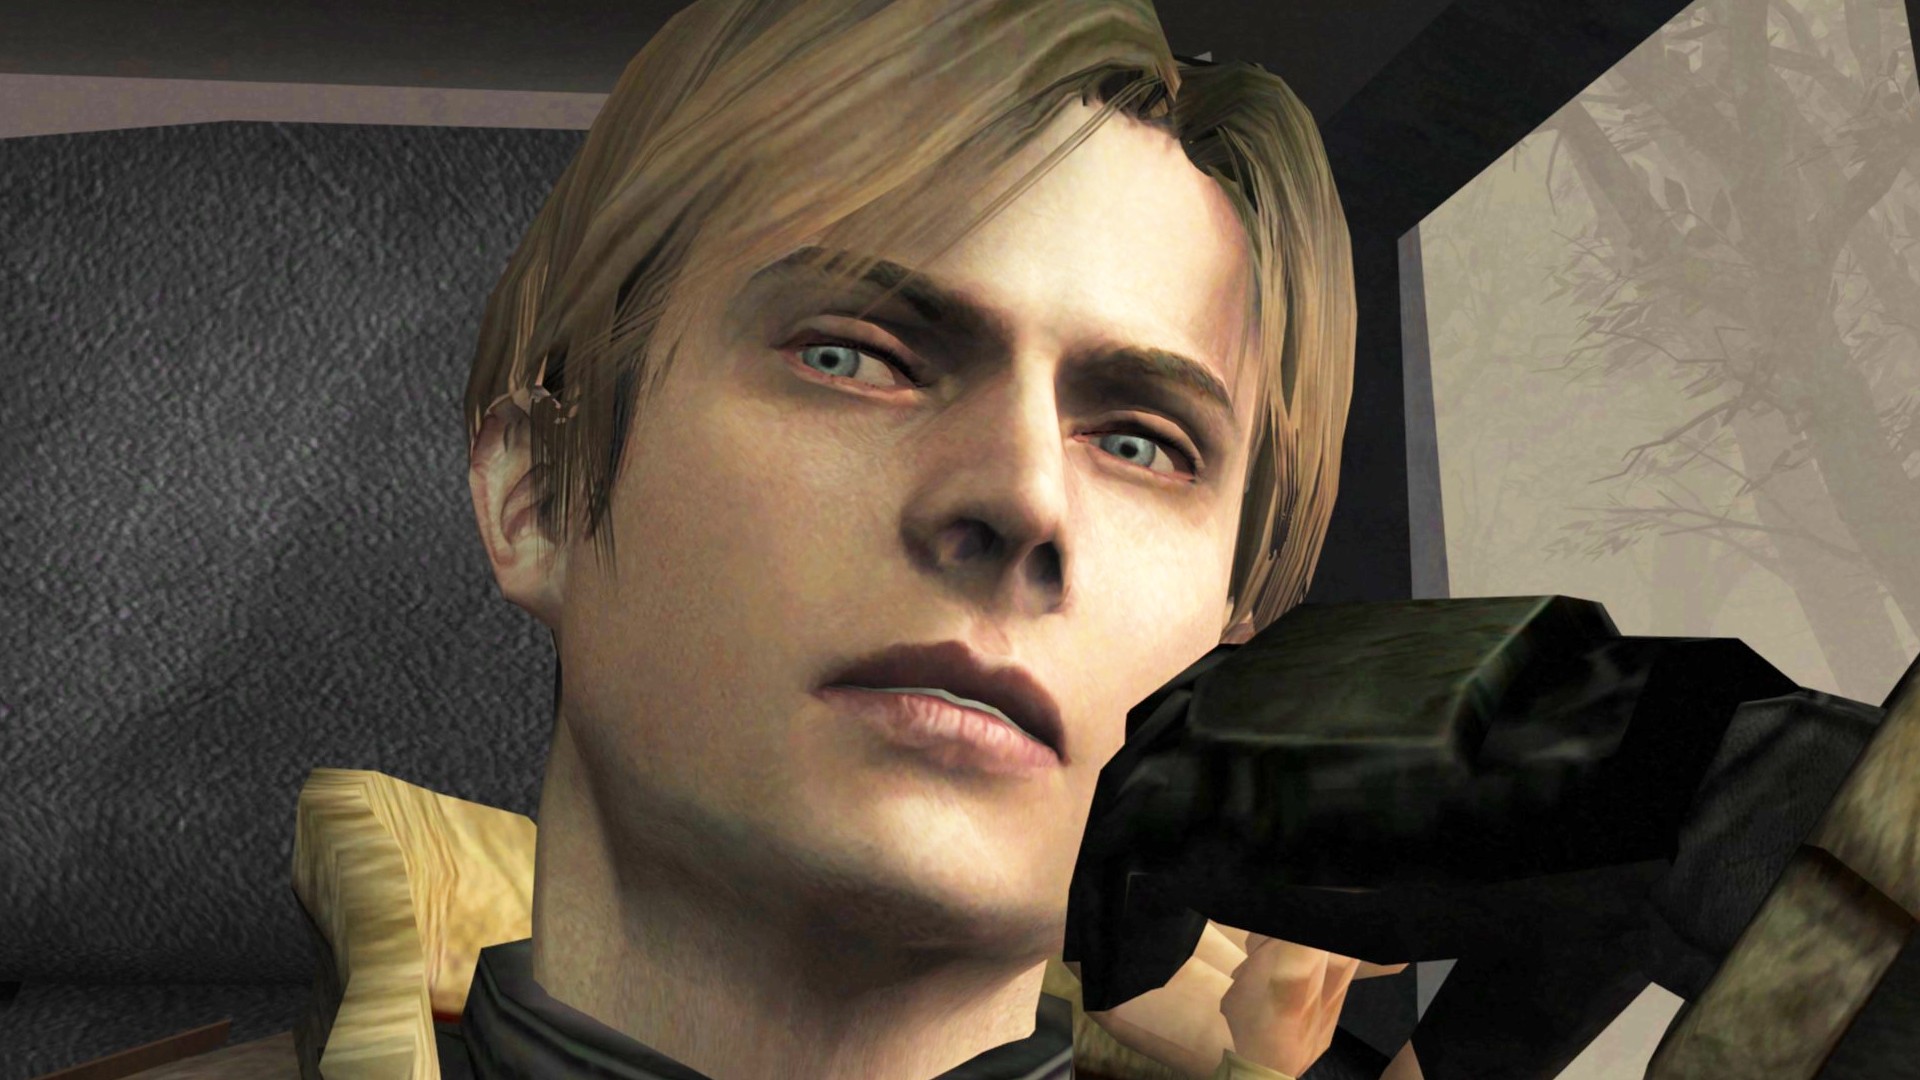 Resident Evil 4 totalement refait en un jeu de tir à défilement latéral 2D